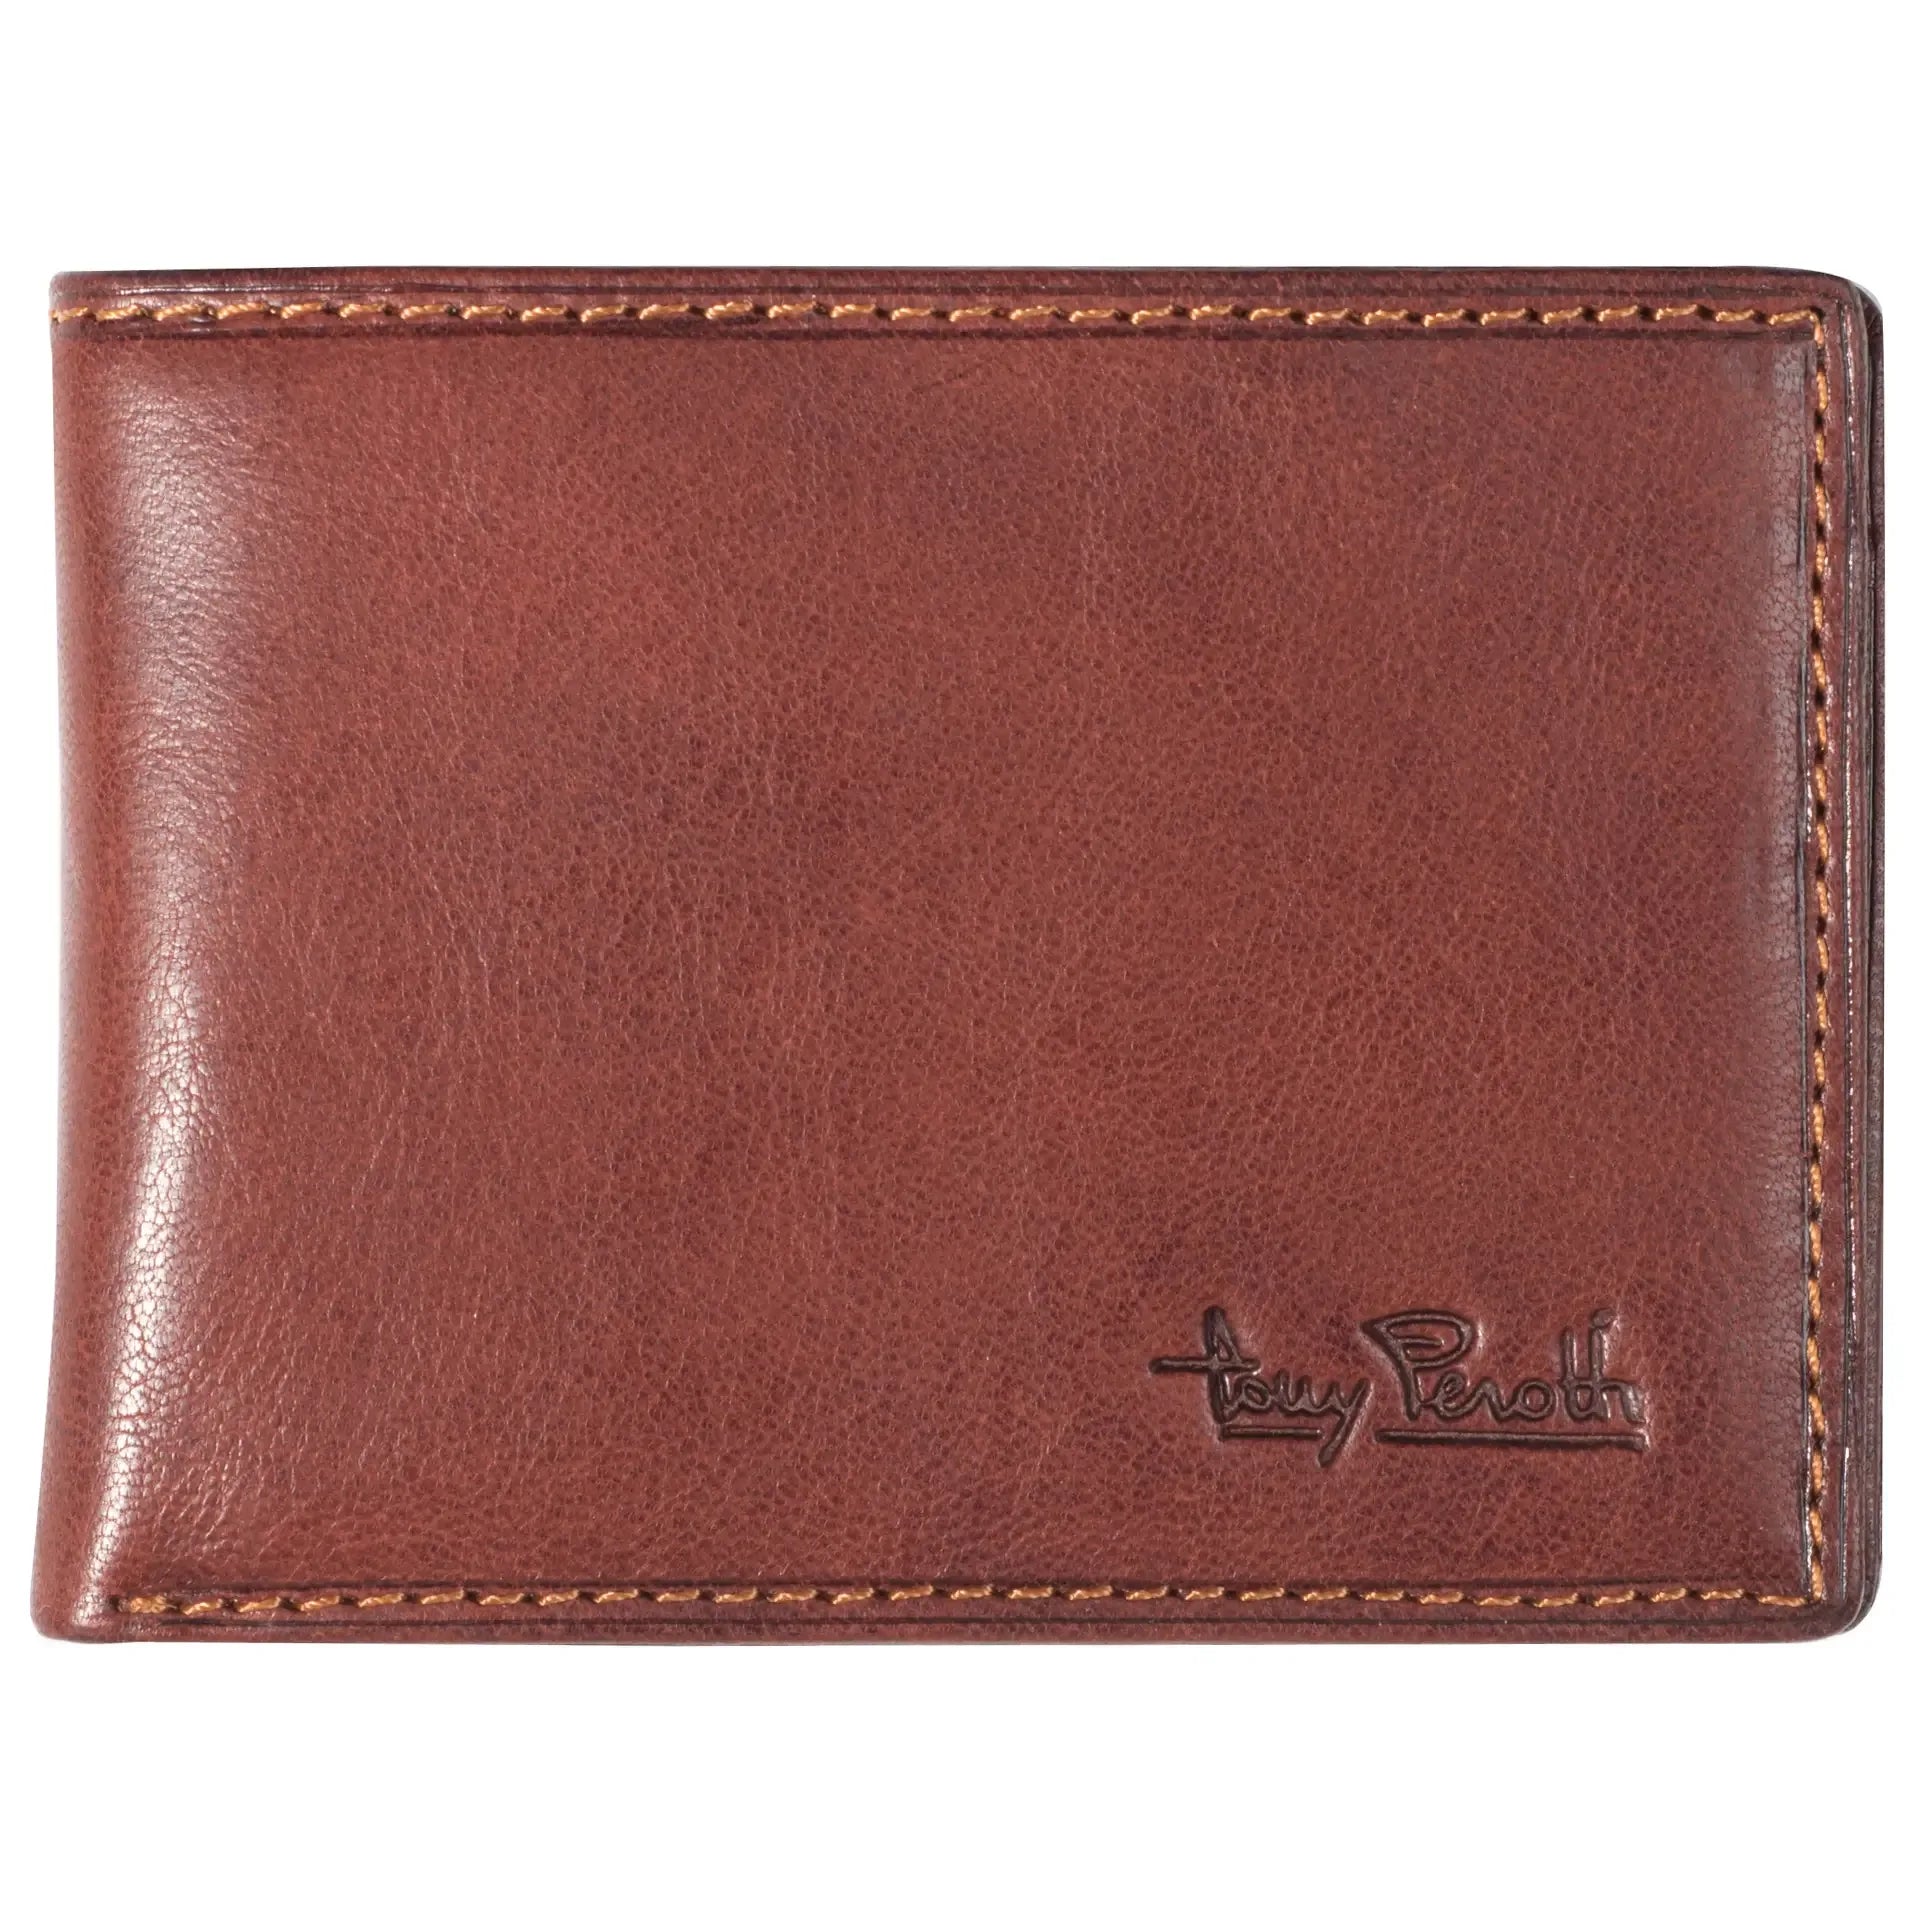 Tony Perotti Furbo Billfold wallet 11 cm - Dark brown